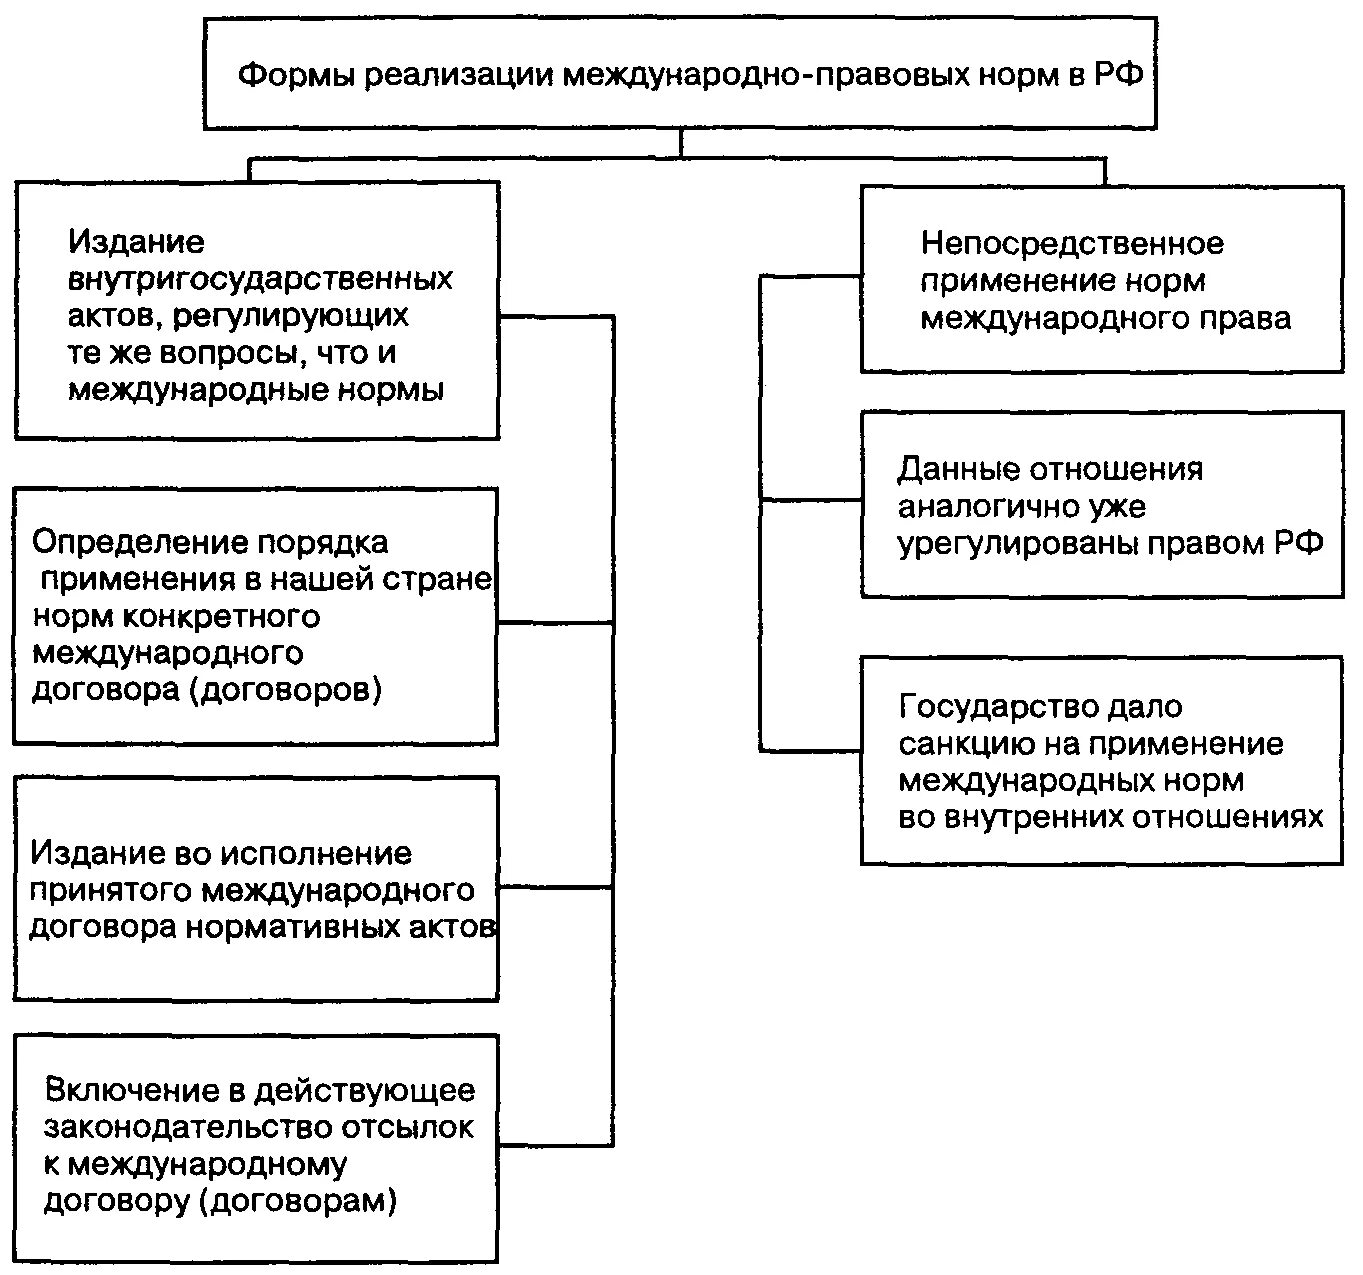 Формы реализации в РФ международно-правовых норм. Форма реализации обязанностей